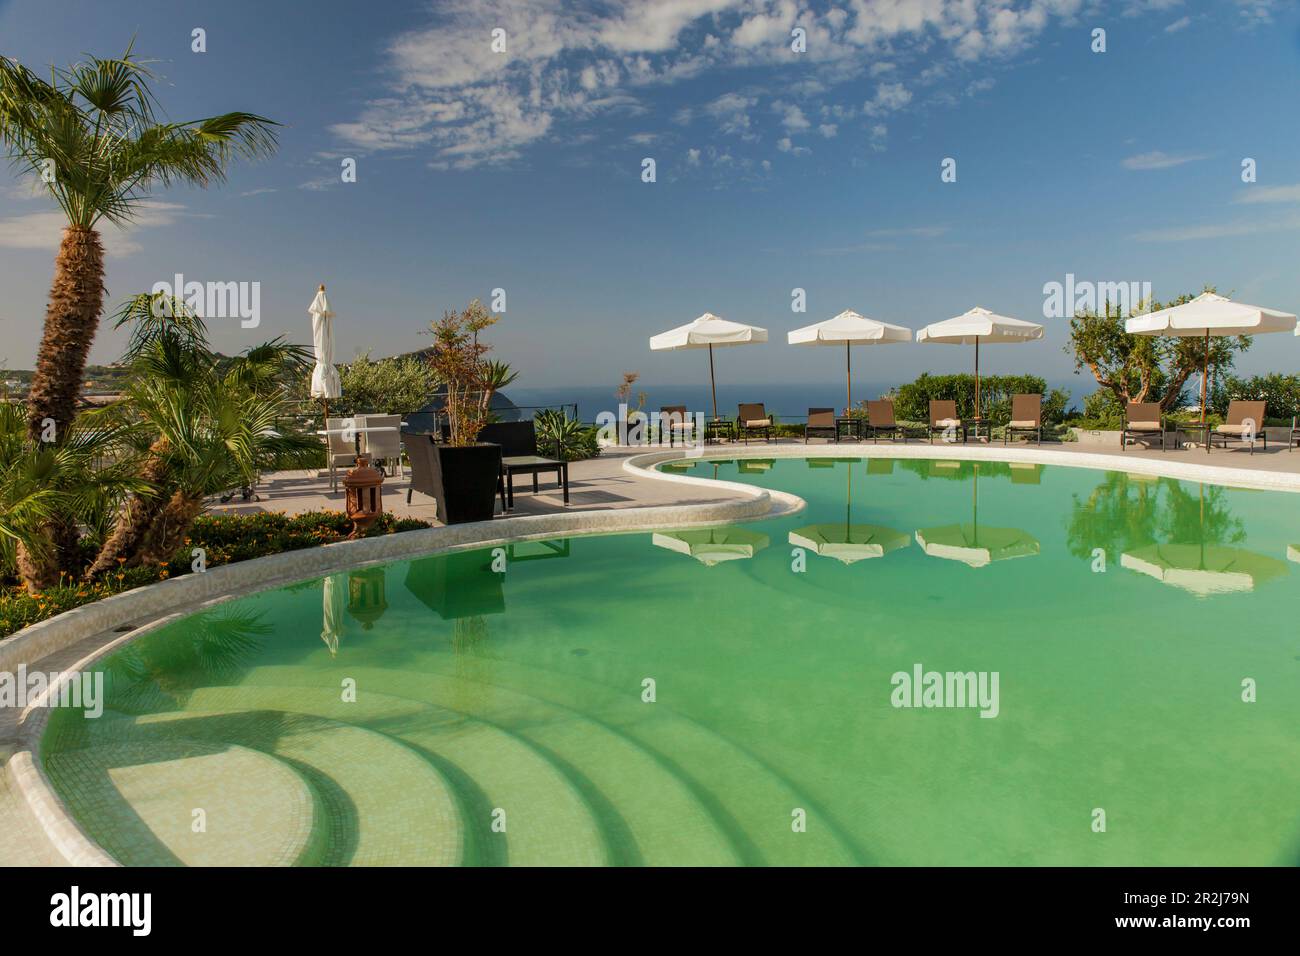 Piscina con ombrelloni e lettini a Forio, Isola d'Ischia, Golfo di Napoli,  Campania, Italia Foto stock - Alamy